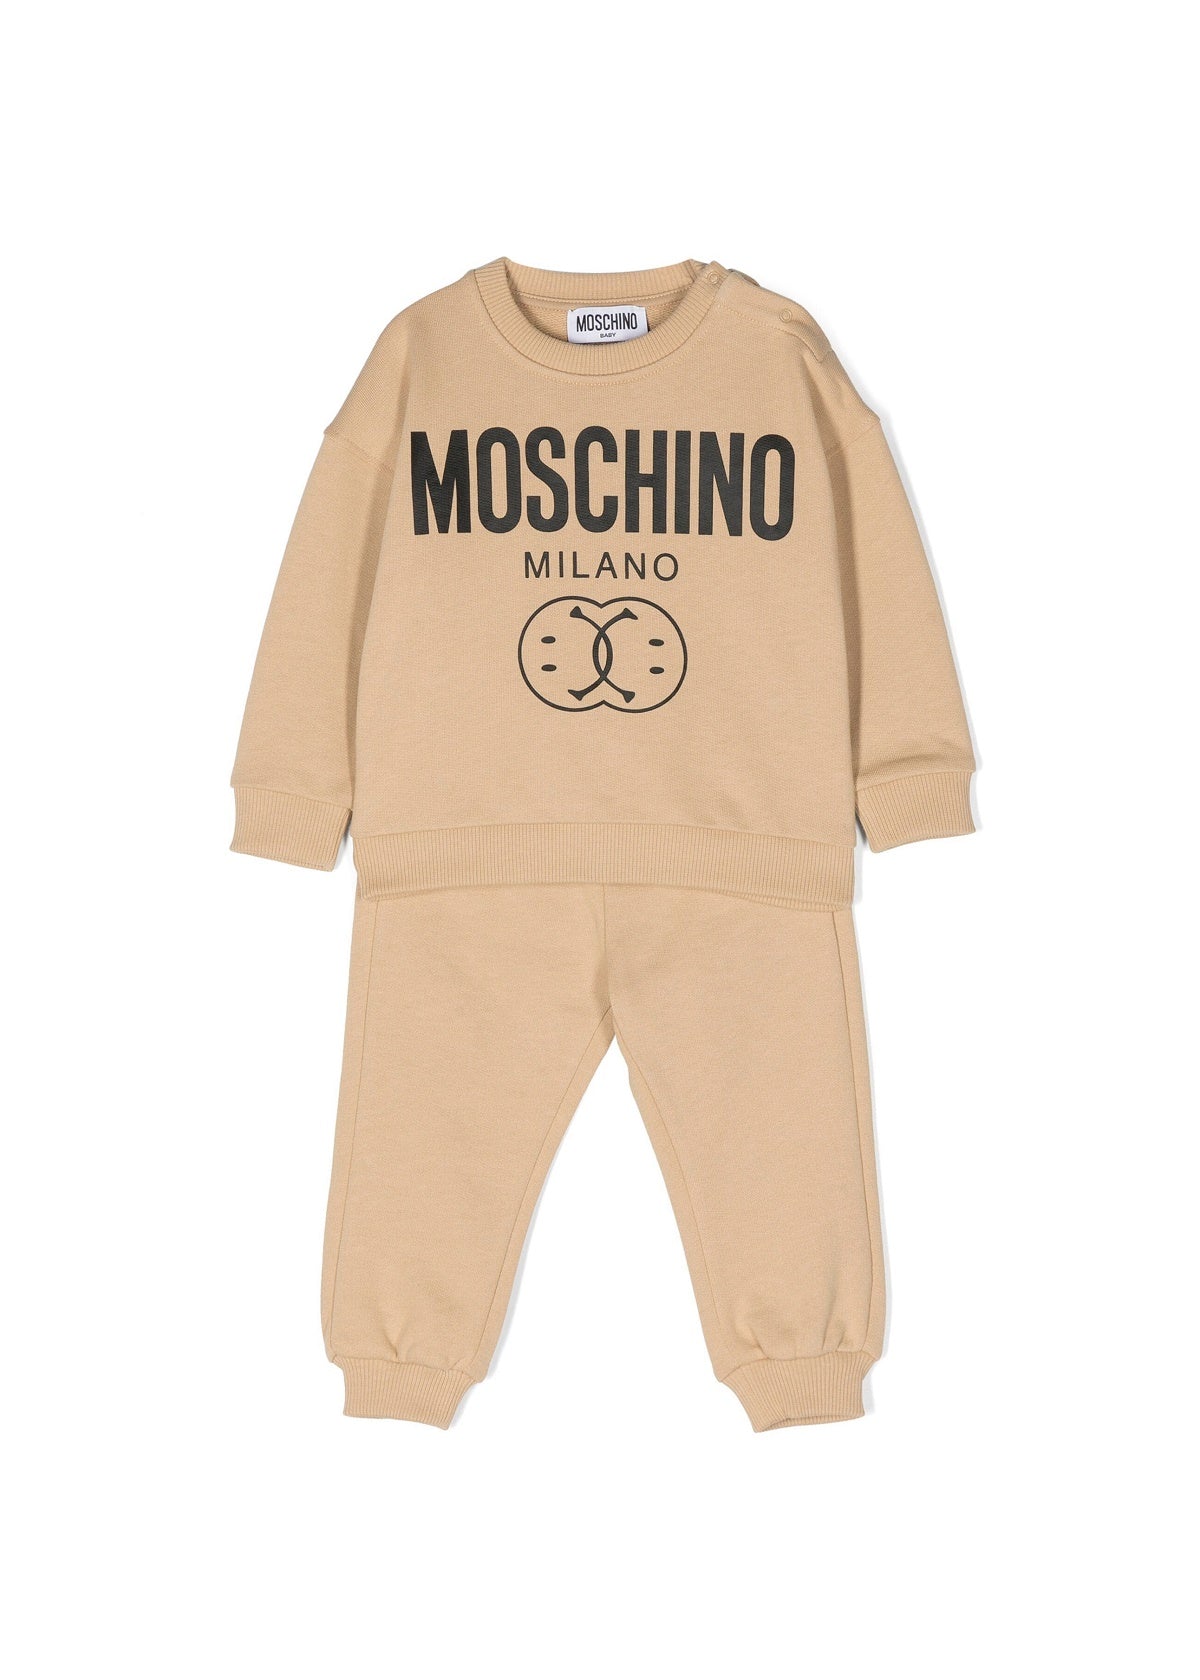 Moschino Kids Tuta Completa Felpa e Pantalone per Neonati